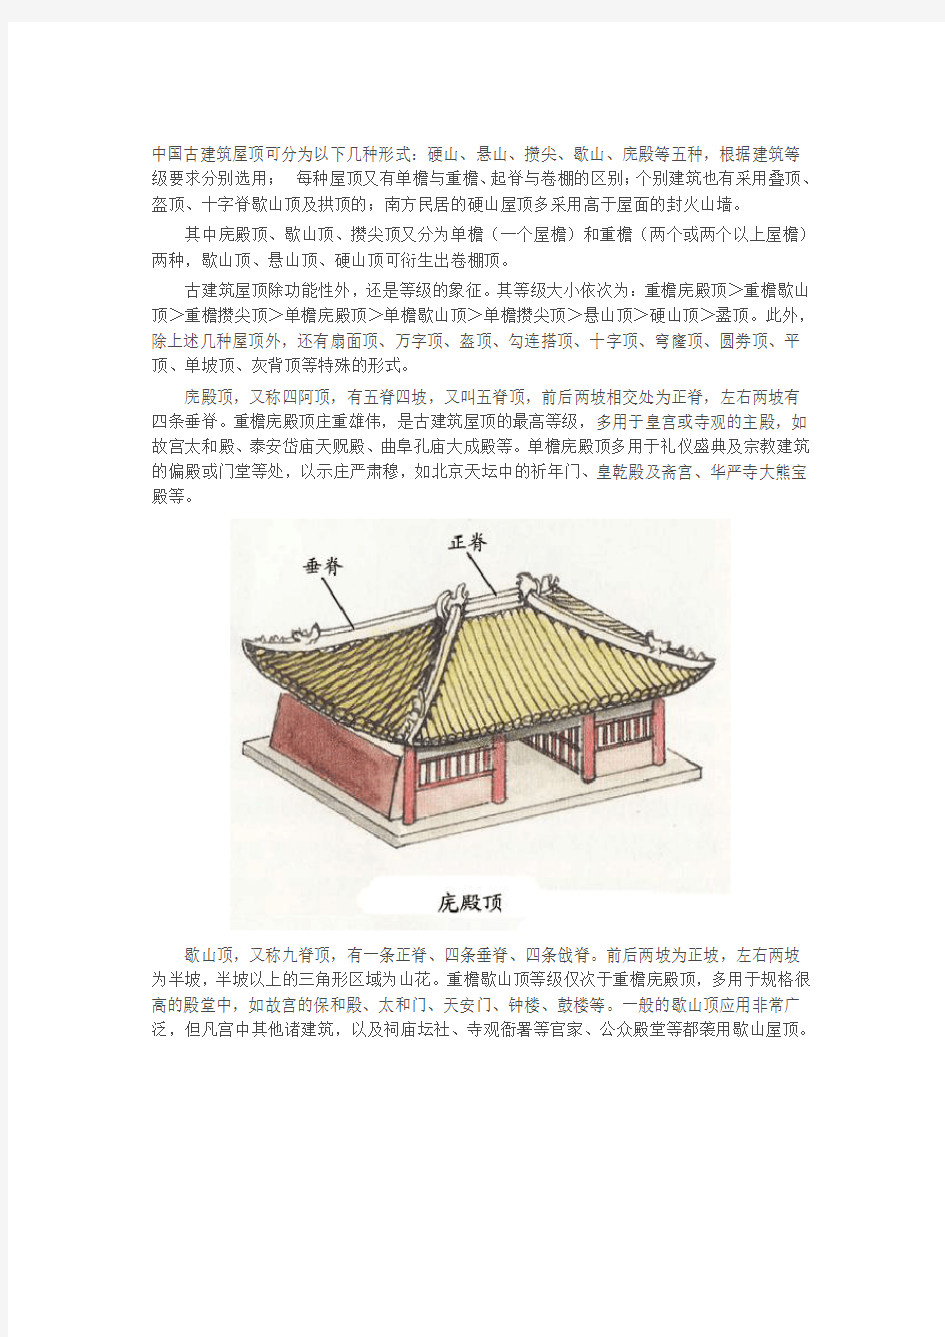 中国古建筑常识图解详解